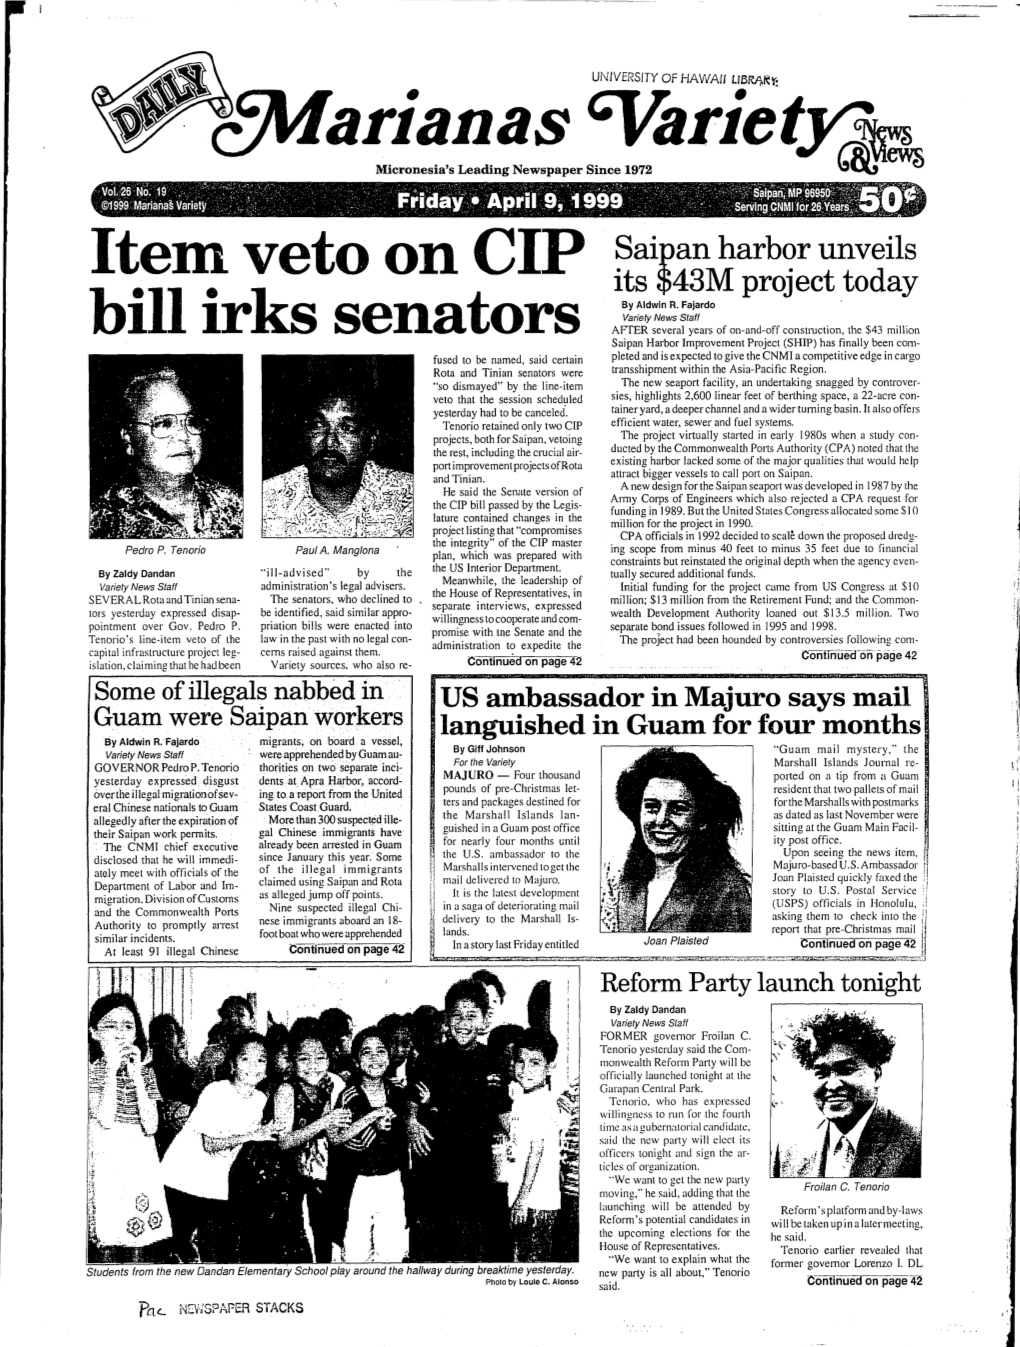 Item. Veto on CIP Bill Irks Senators